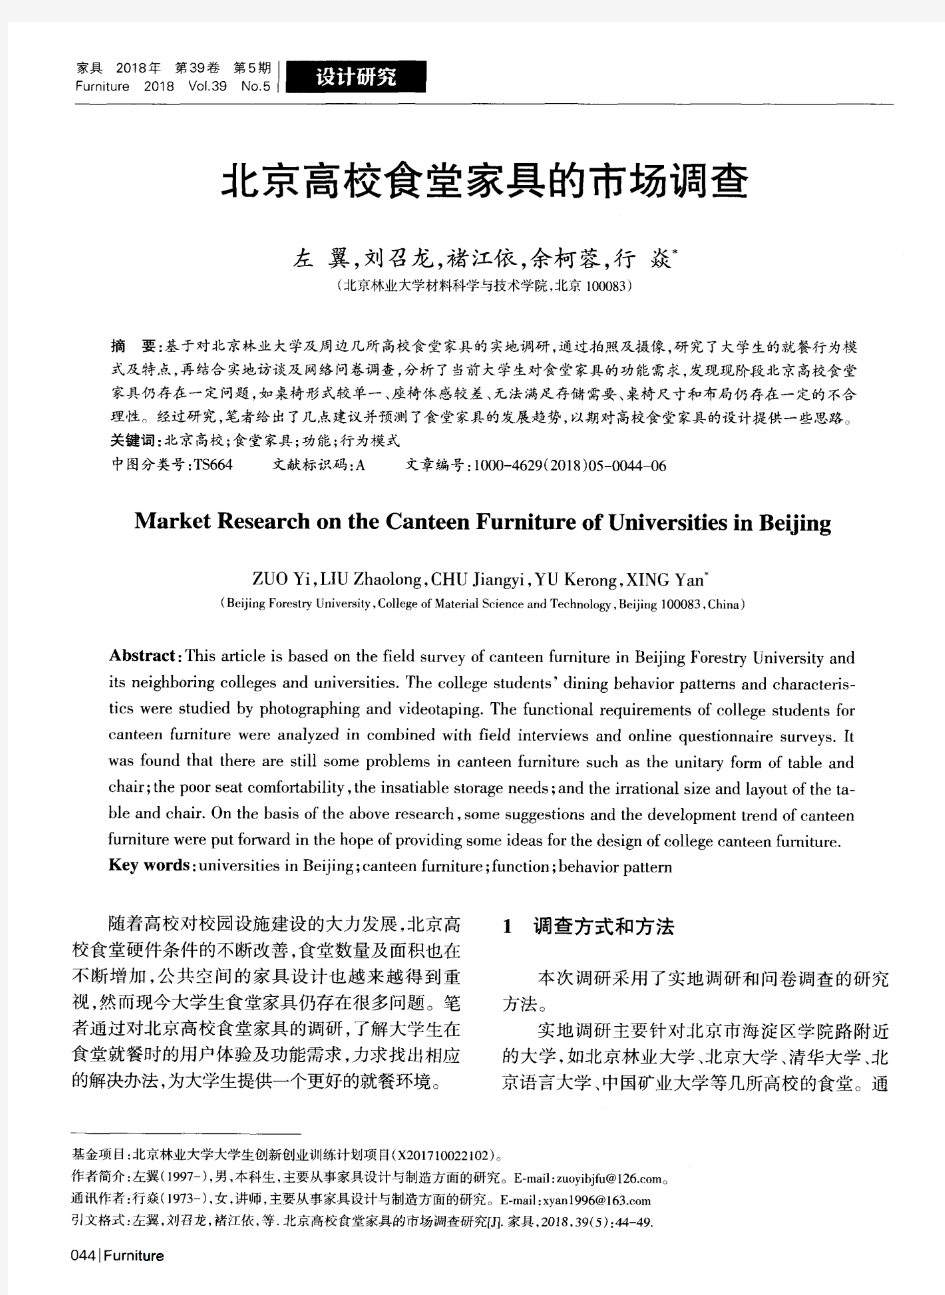 北京高校食堂家具的市场调查